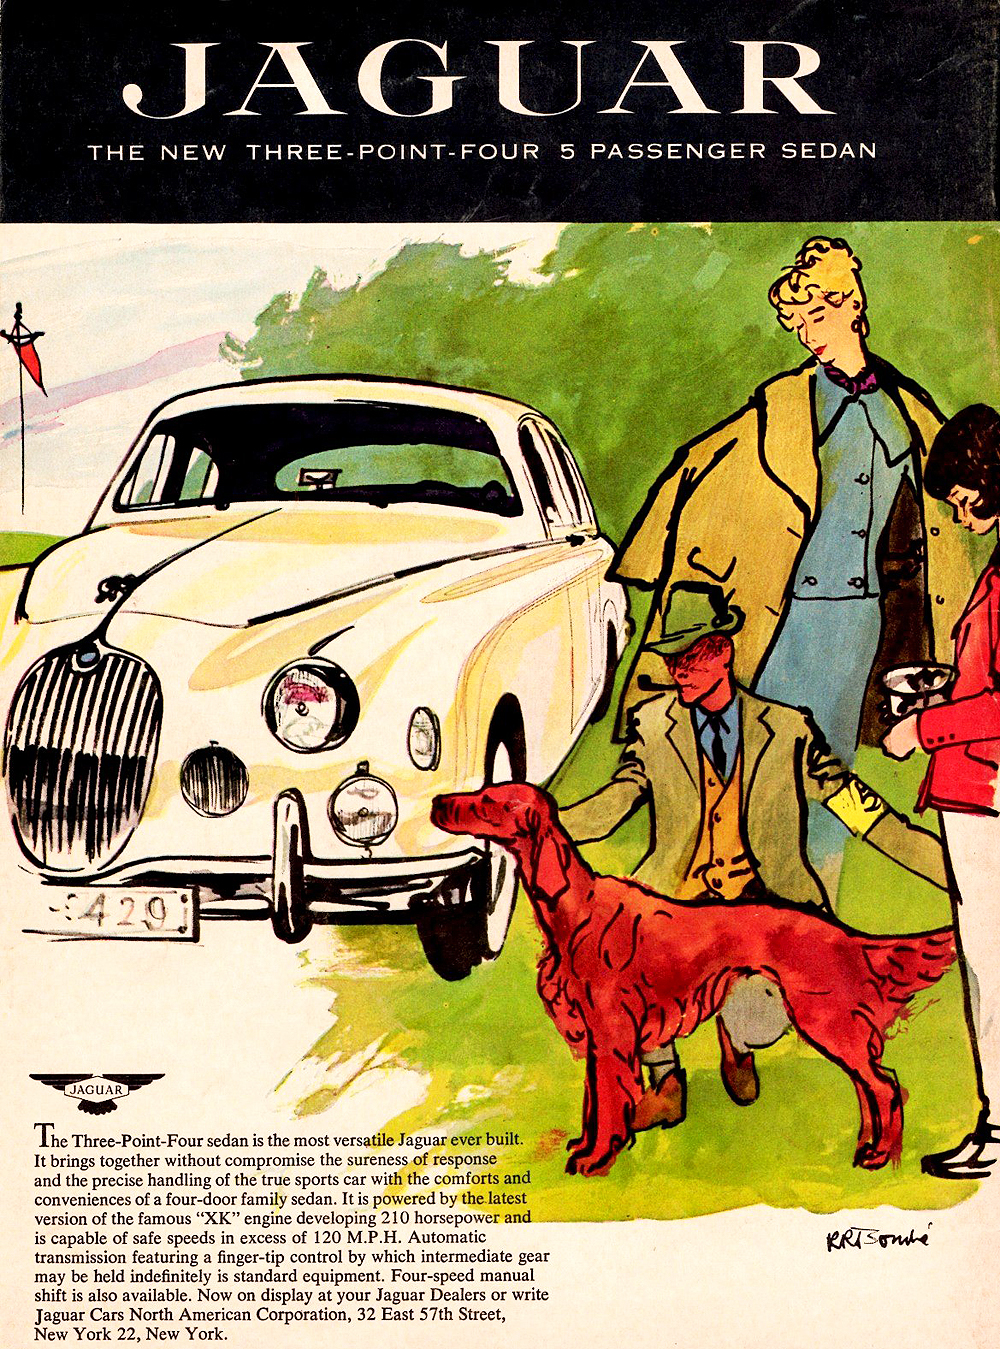 1957 Jaguar Auto Advertising